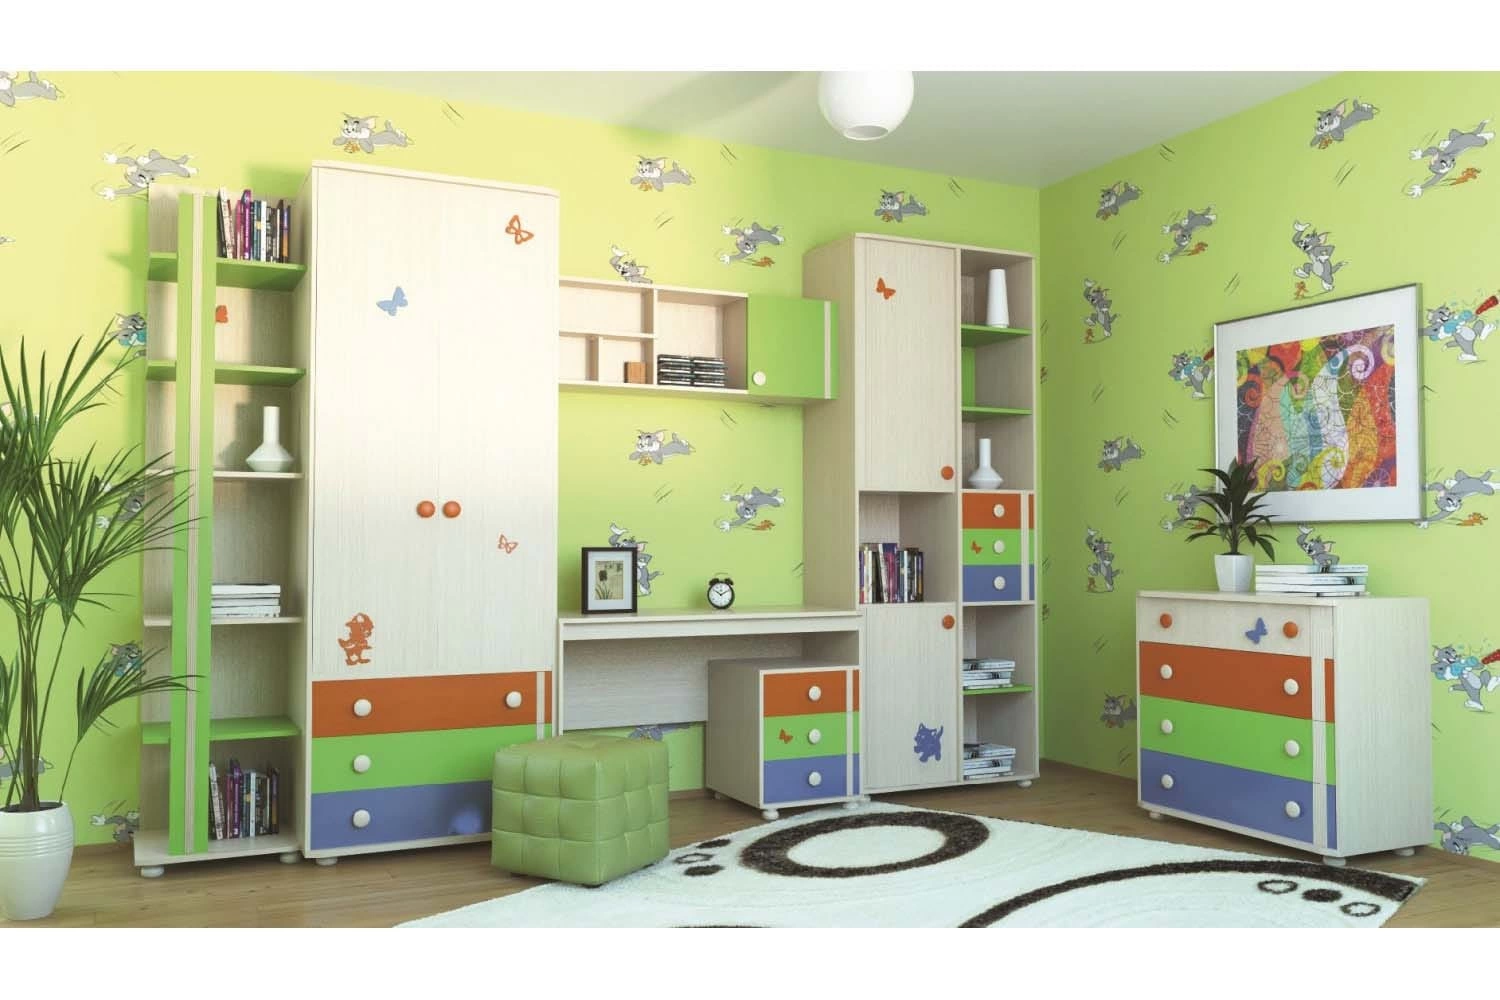 Детская мебель mosmirmebeli gmail com. Детская мебель фабрики Корвет. Шкаф для детской комнаты. Красивая мебель в детскую комнату. Стенка для детской комнаты.